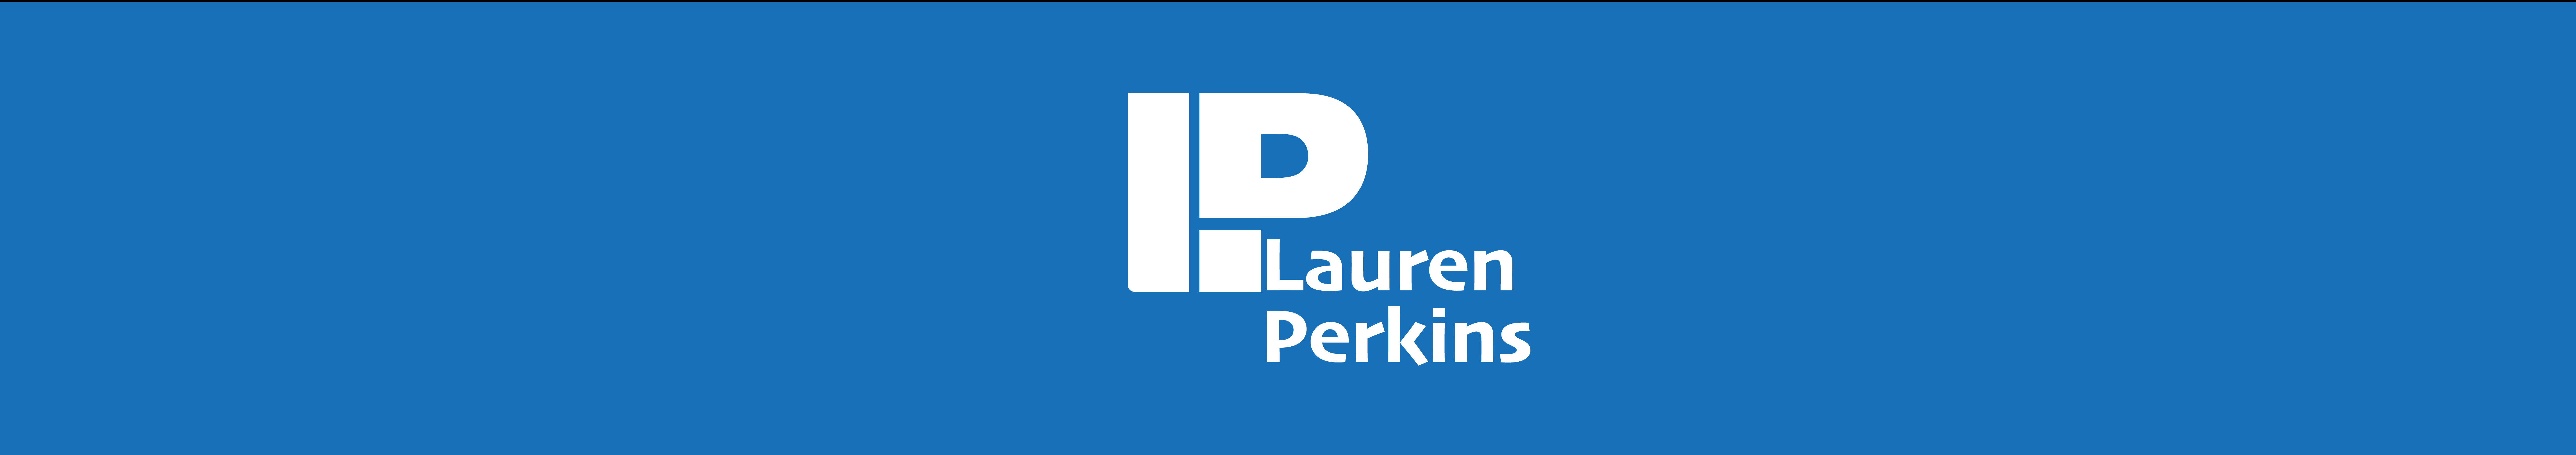 Lauren Perkins's profile banner